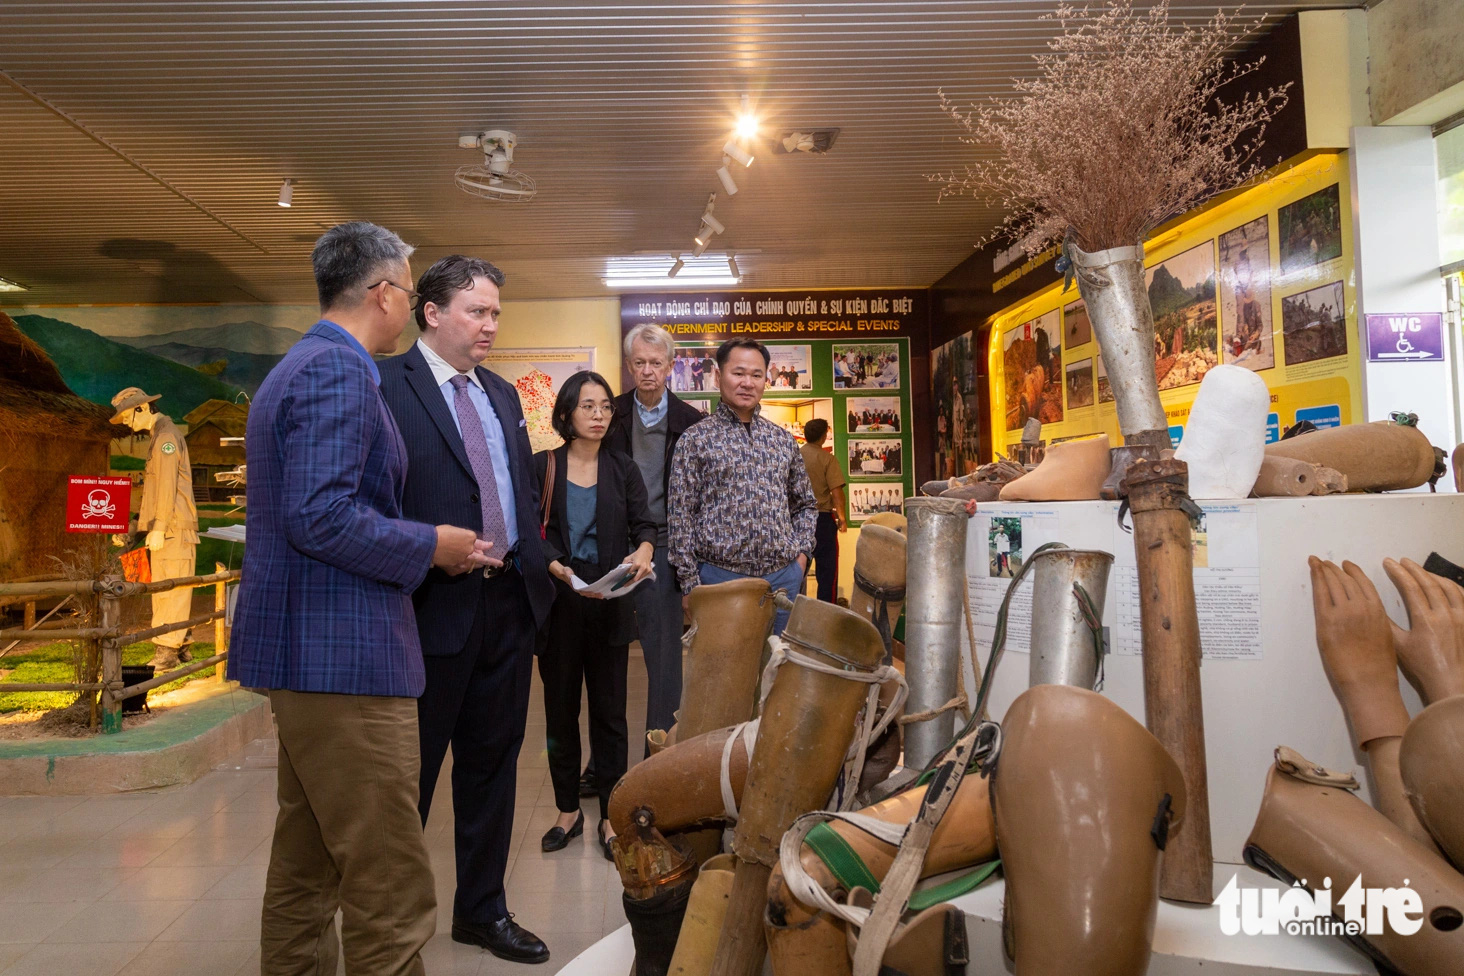 'Bảo tàng bom mìn' ở Quảng Trị - điểm đến các chính trị gia, du khách nước ngoài muốn đến